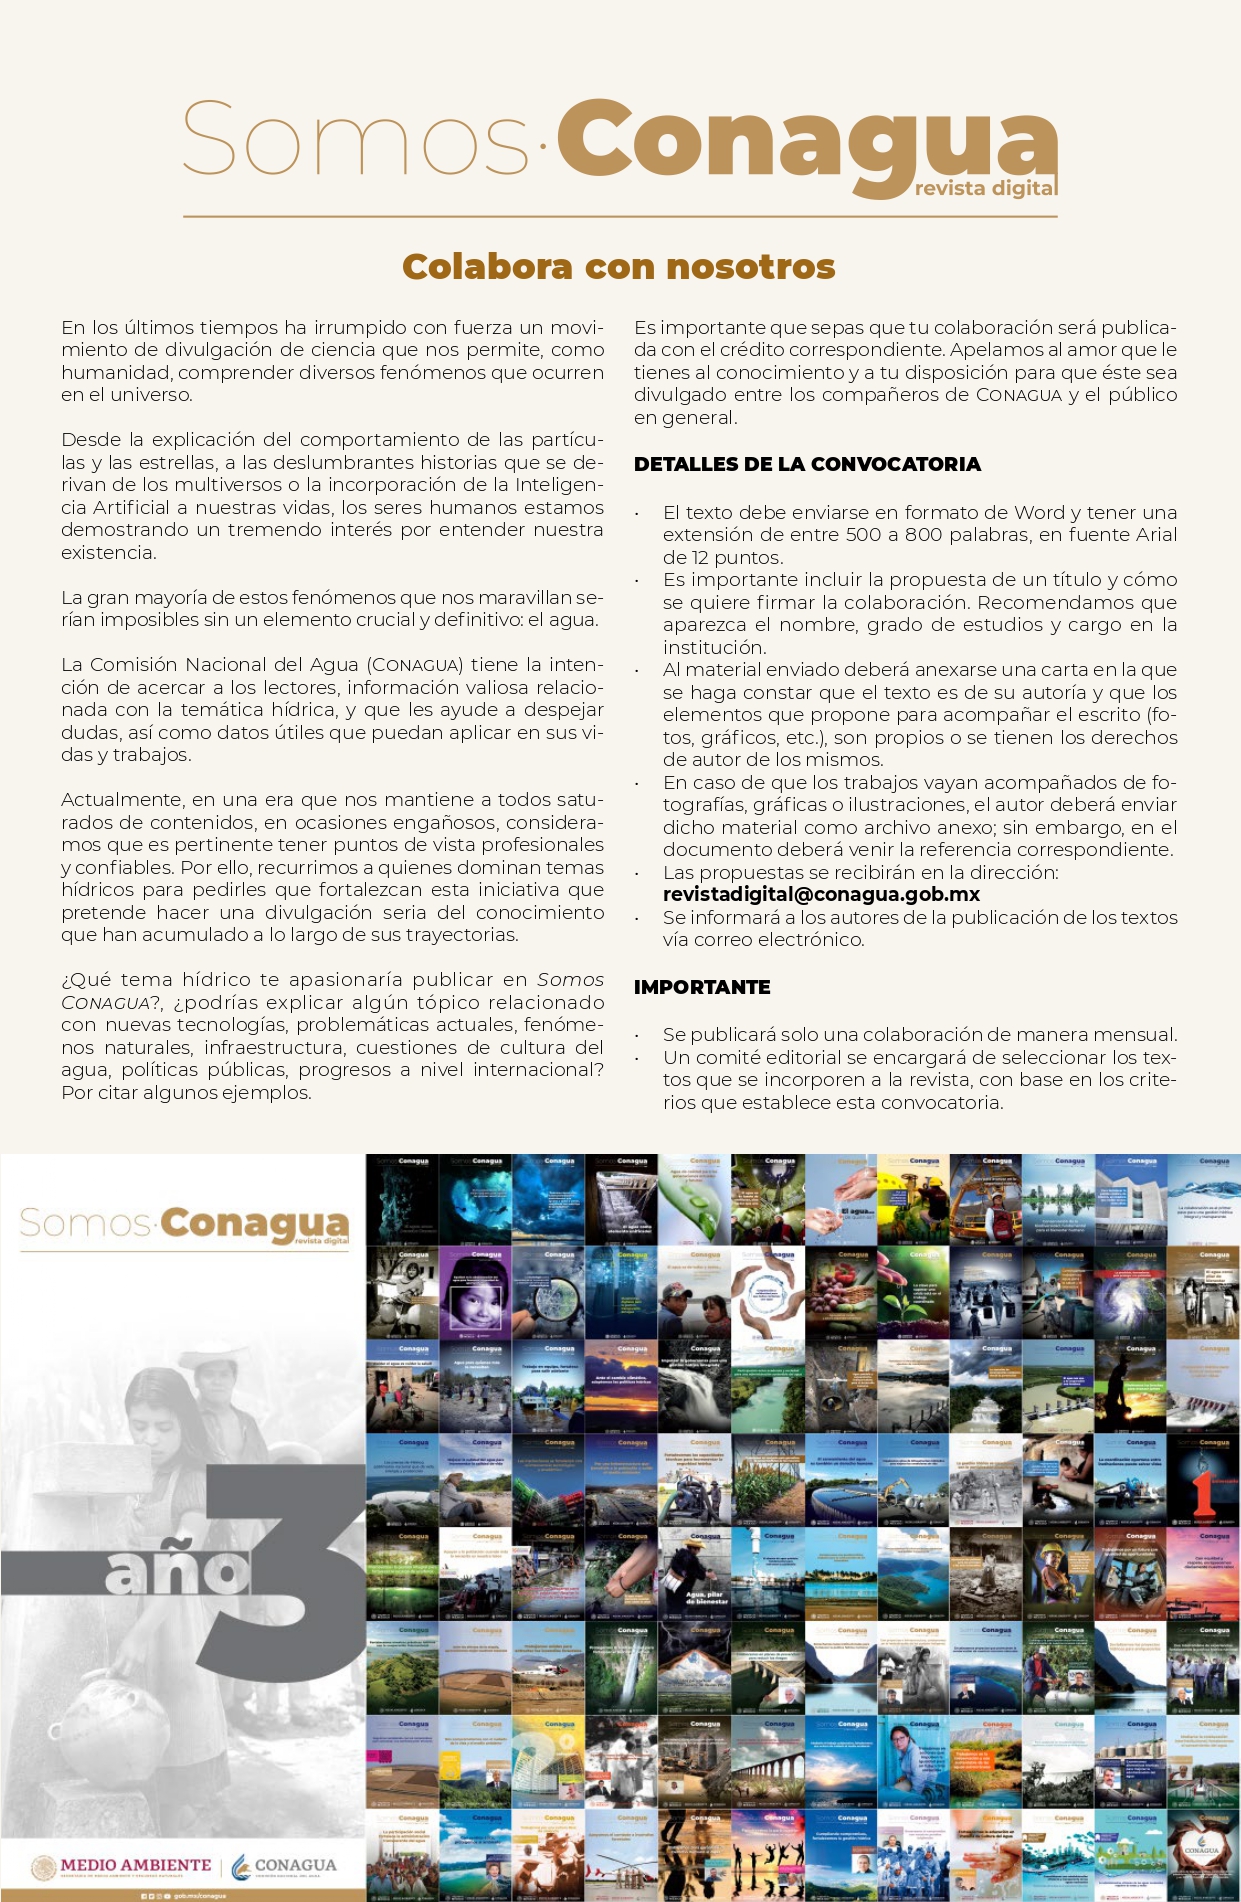 Convocatoria – Revista digital Somos Conagua: Colabora con nosotros (CONAGUA)